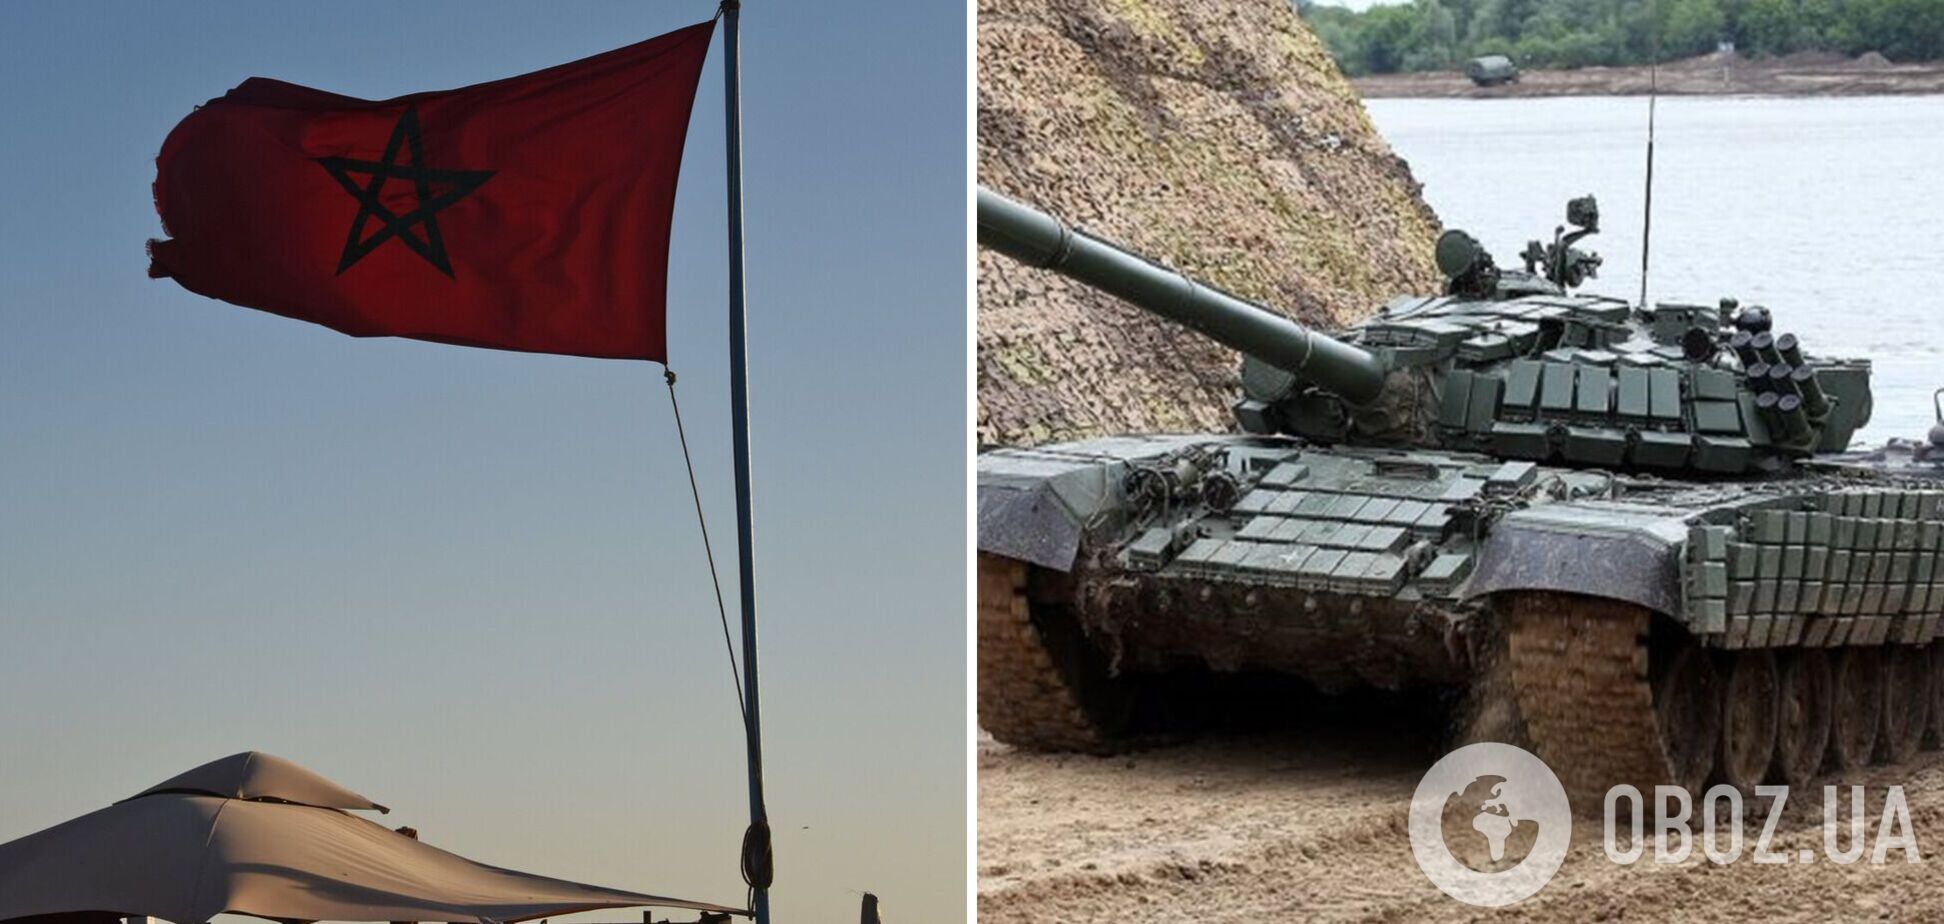 Марокко впервые предоставит Украине военную помощь: ВСУ получат запчасти для танков Т-72 